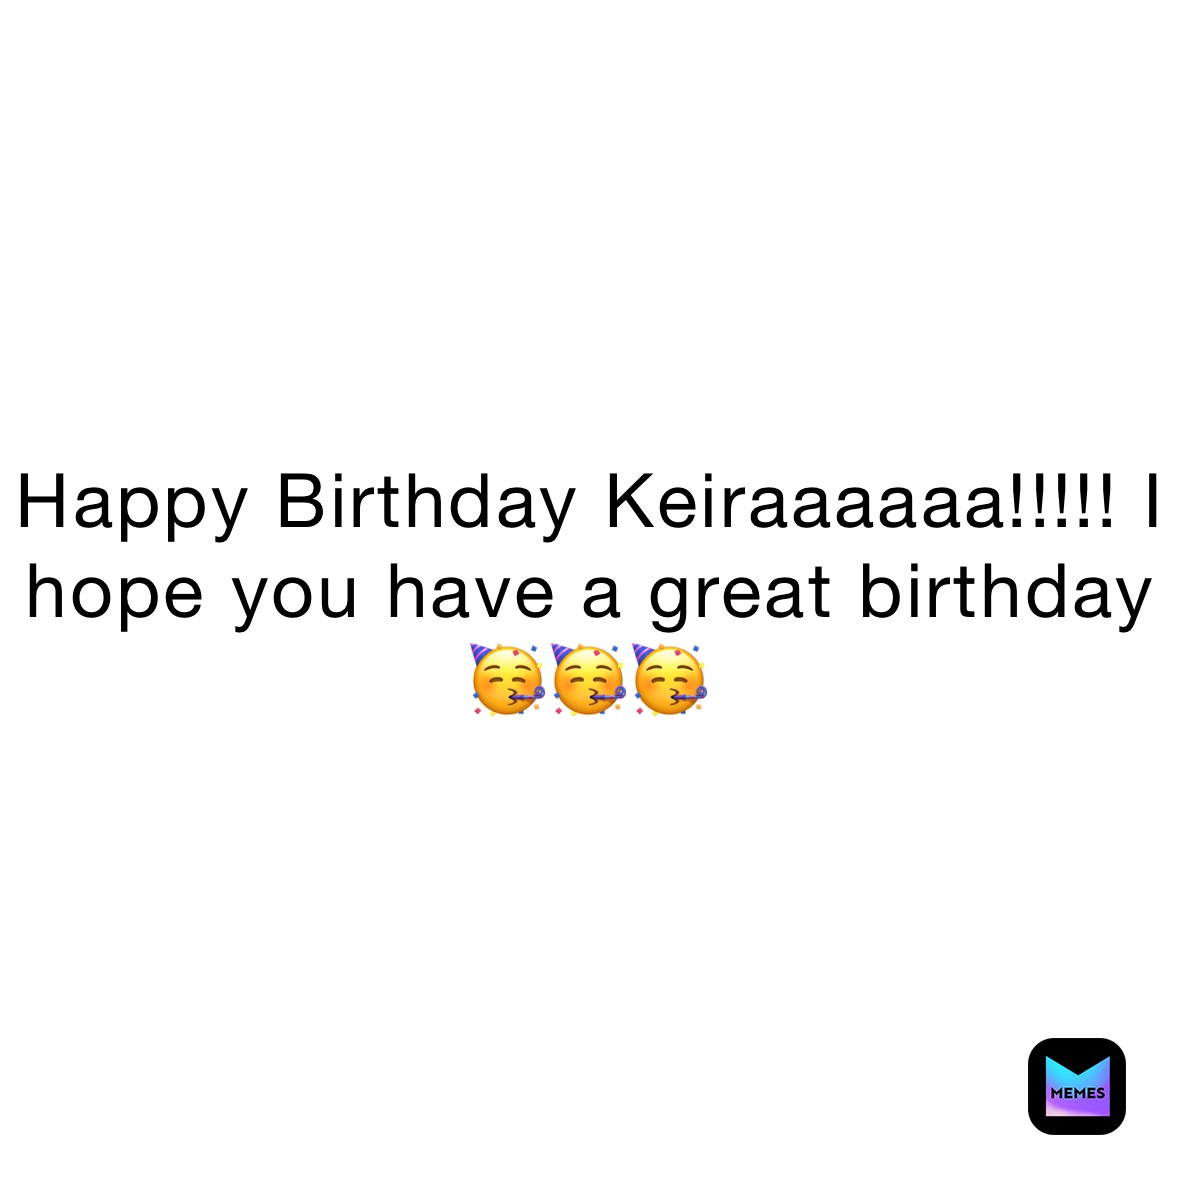 Happy Birthday Keiraaaaaa!!!!! I hope you have a great birthday 🥳🥳🥳